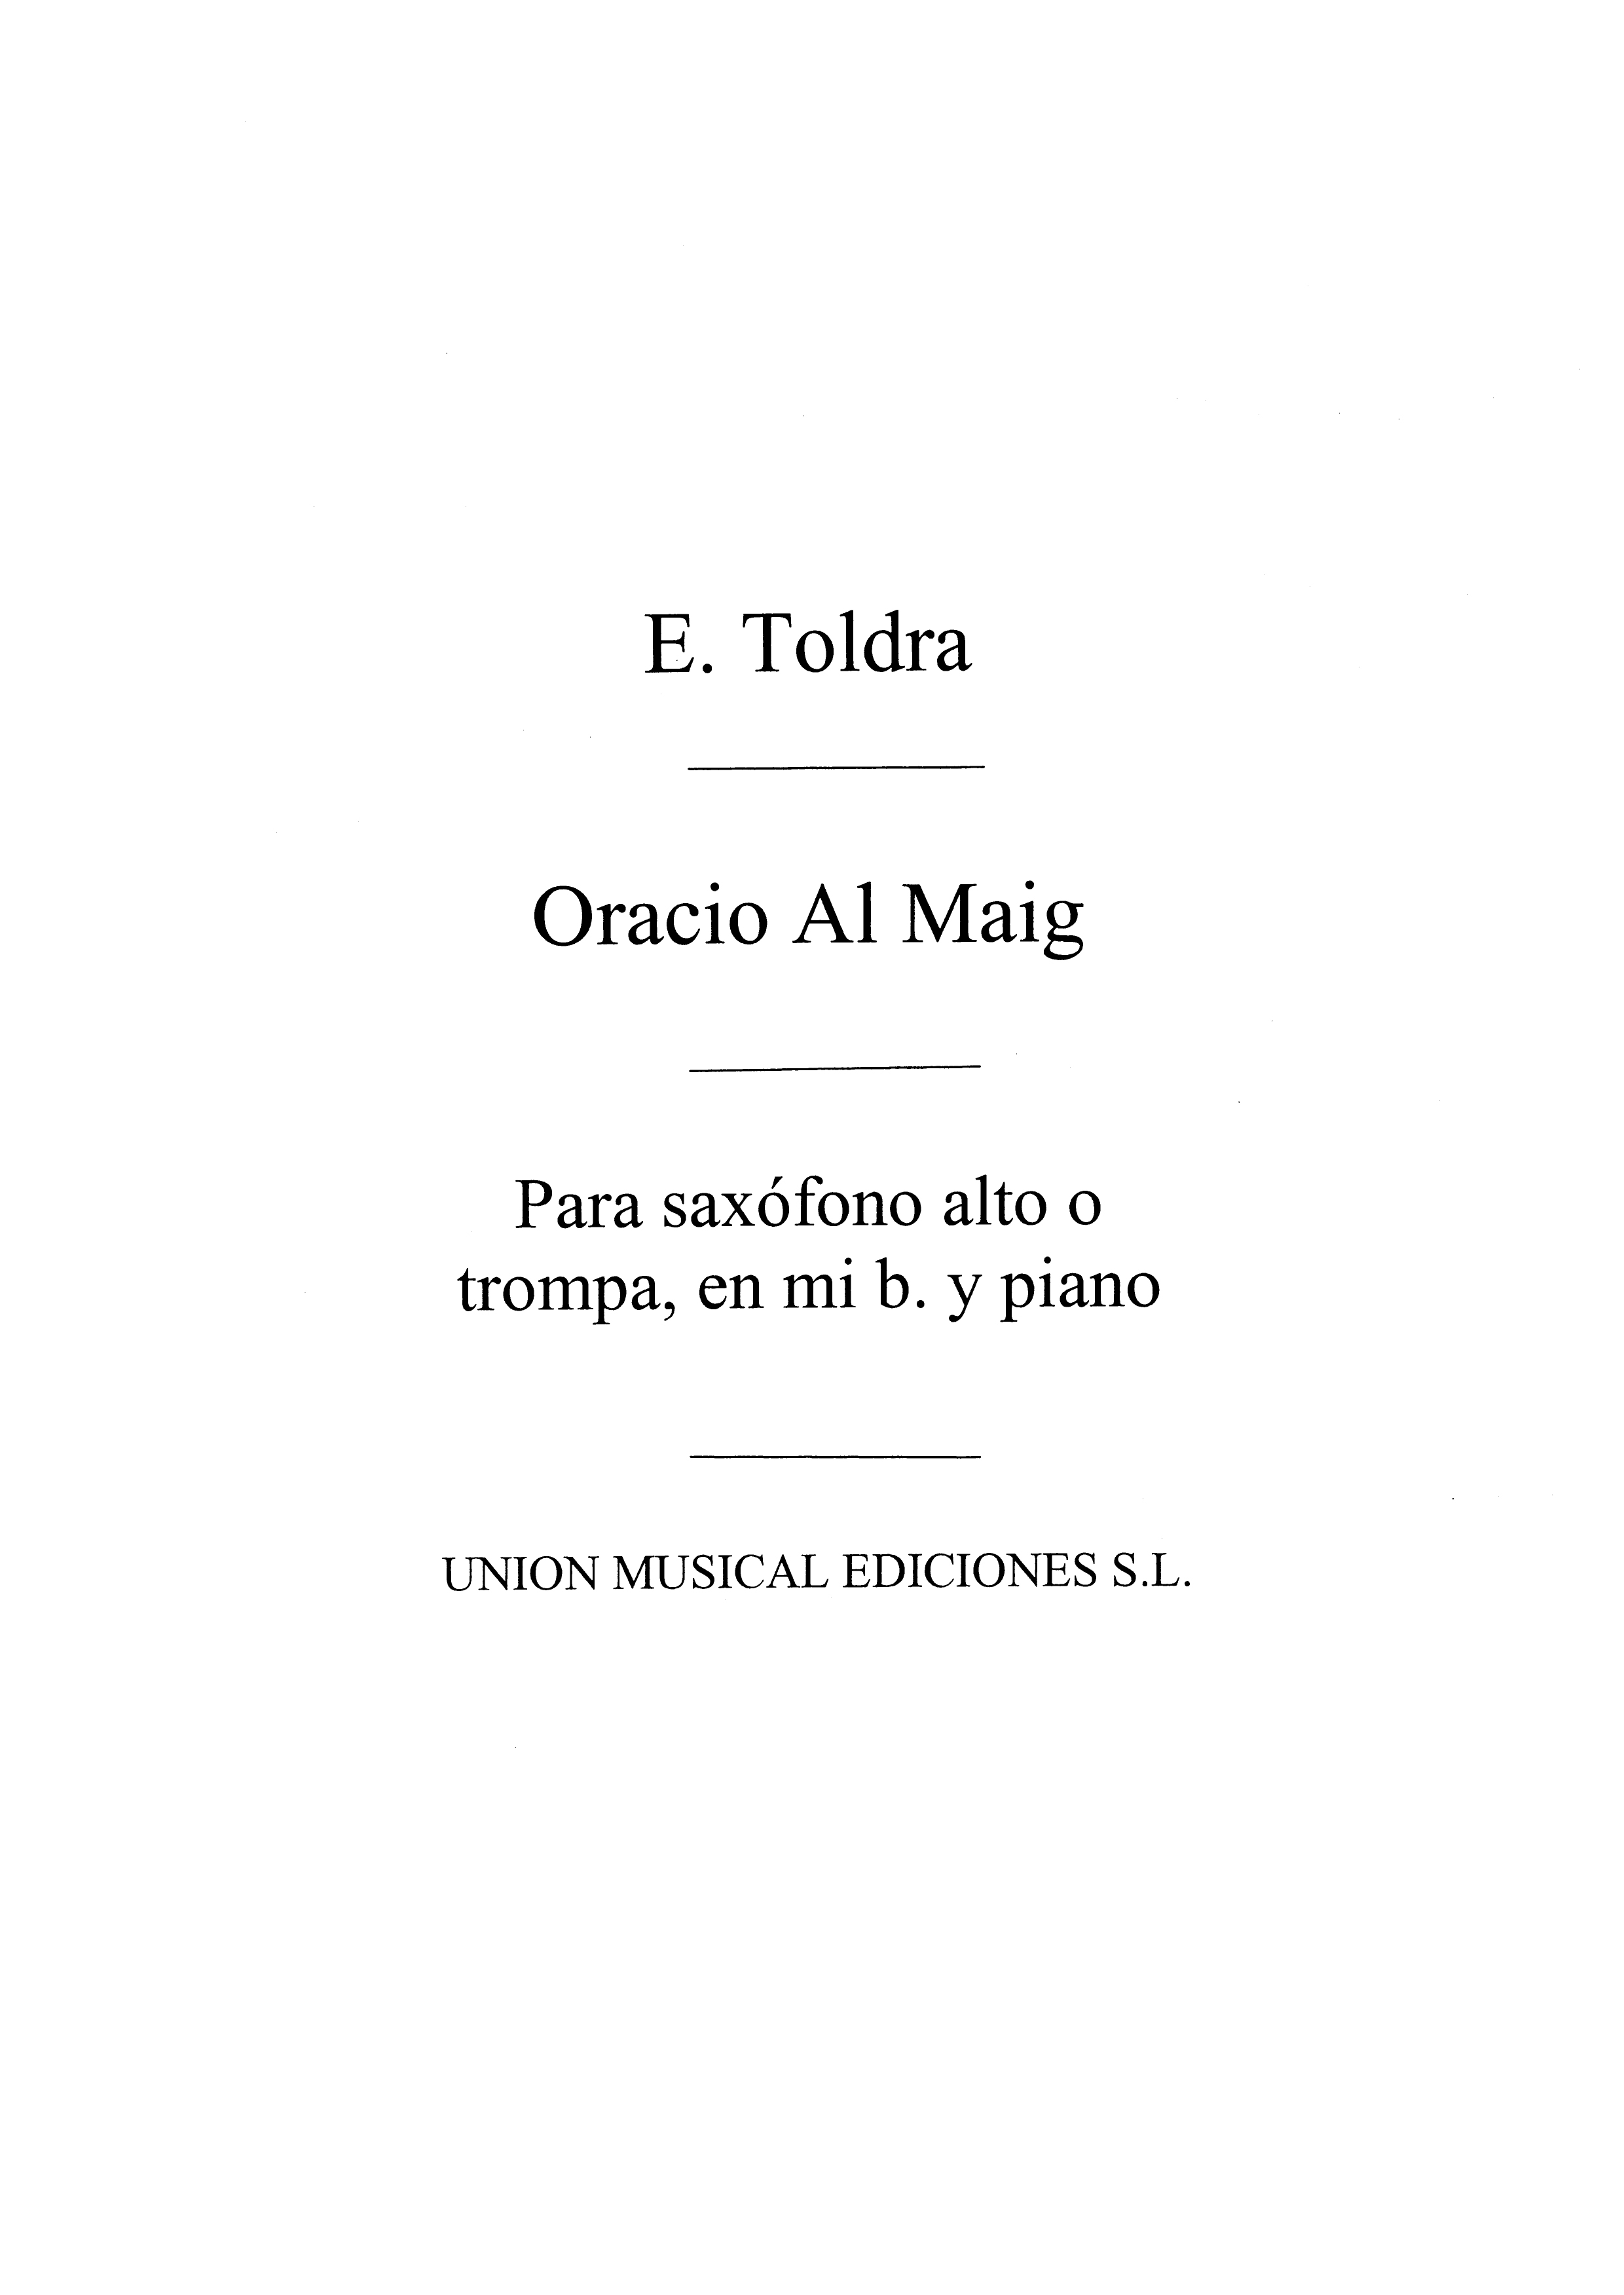 Toldra: Oracio Al Maig (Bayer) for Alto Saxophone